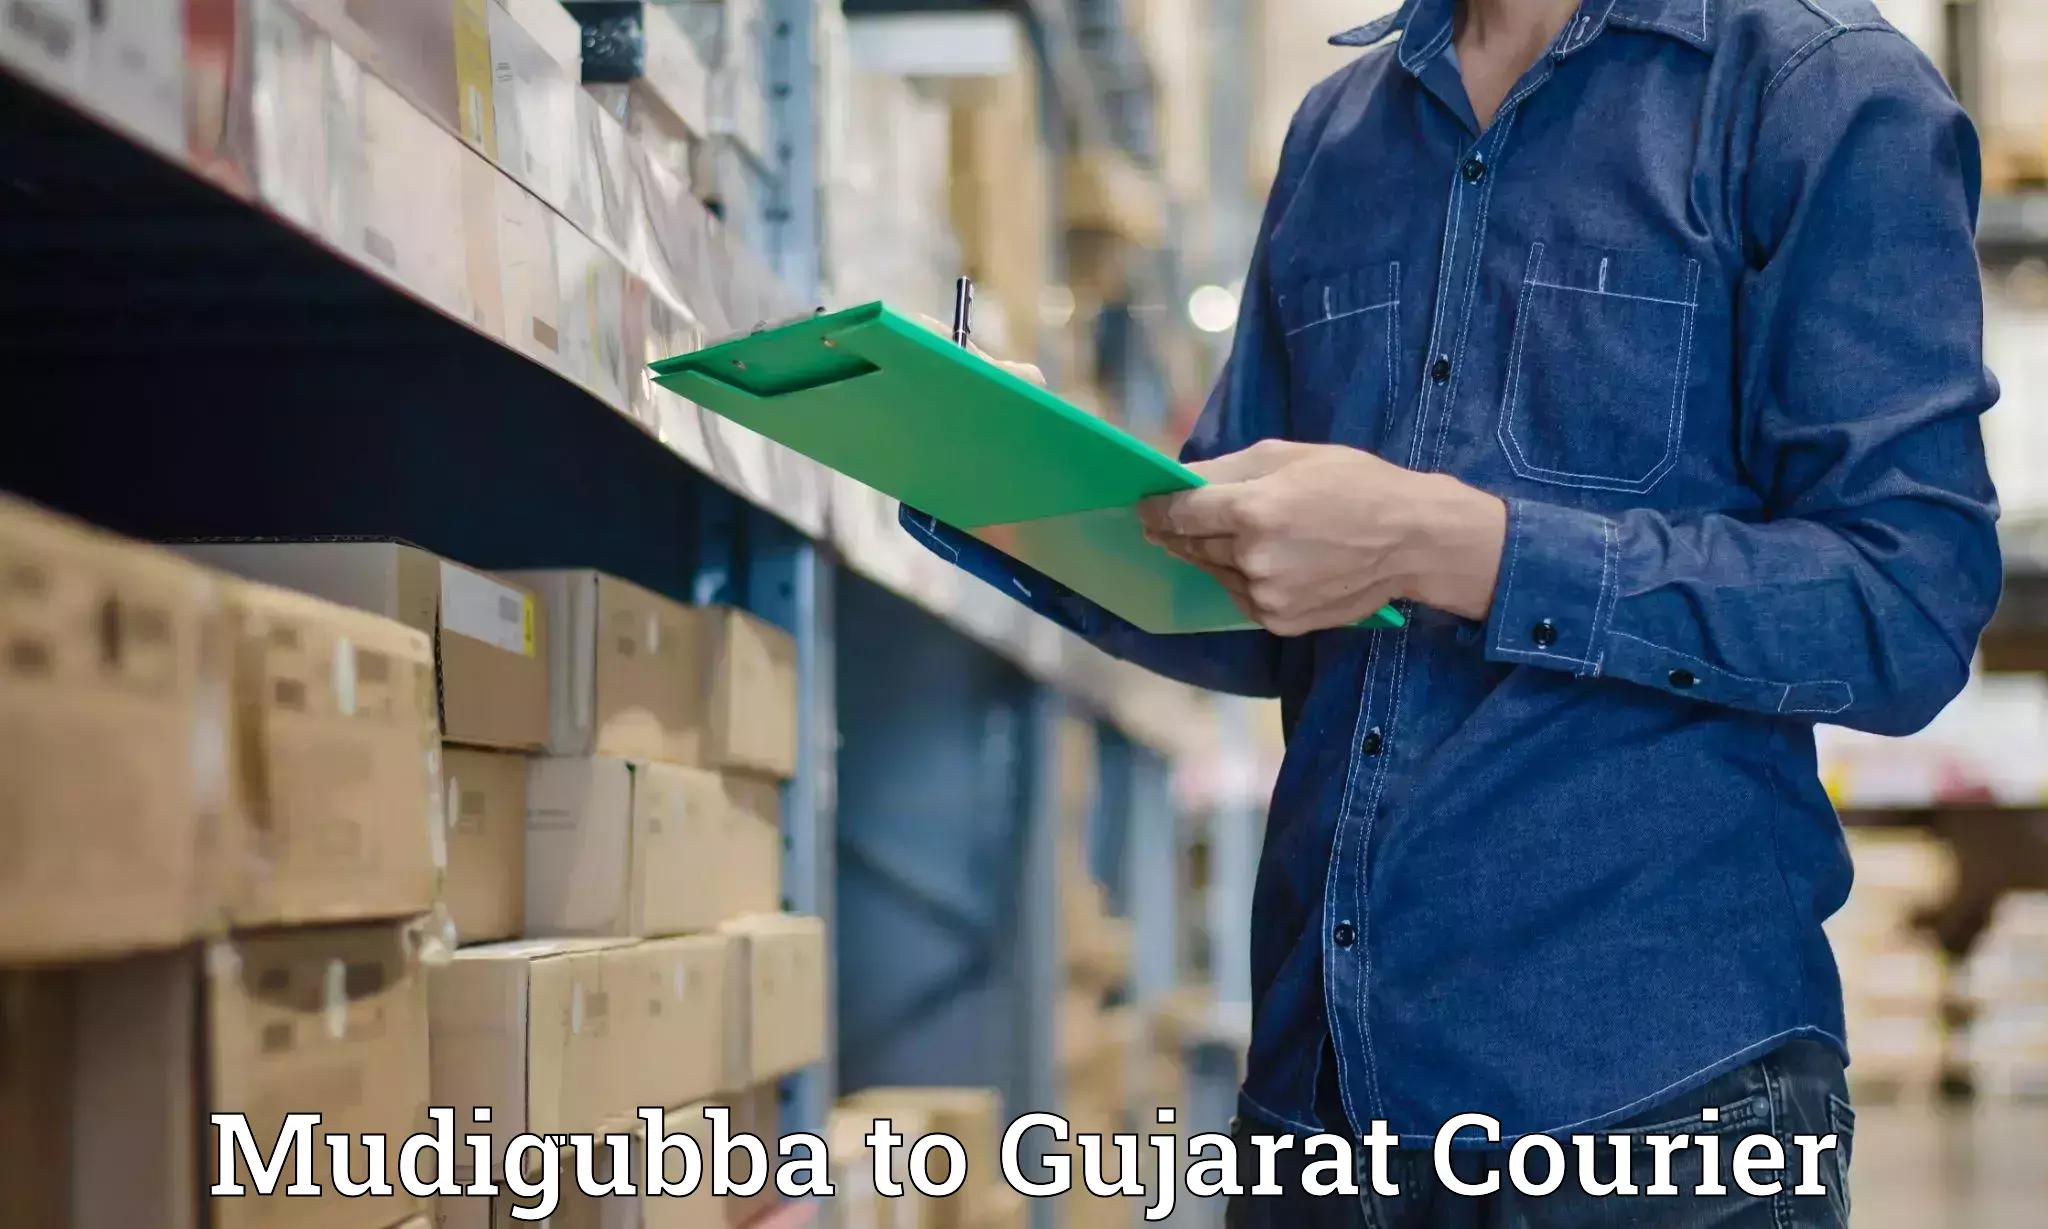 Smart shipping technology Mudigubba to Rajula